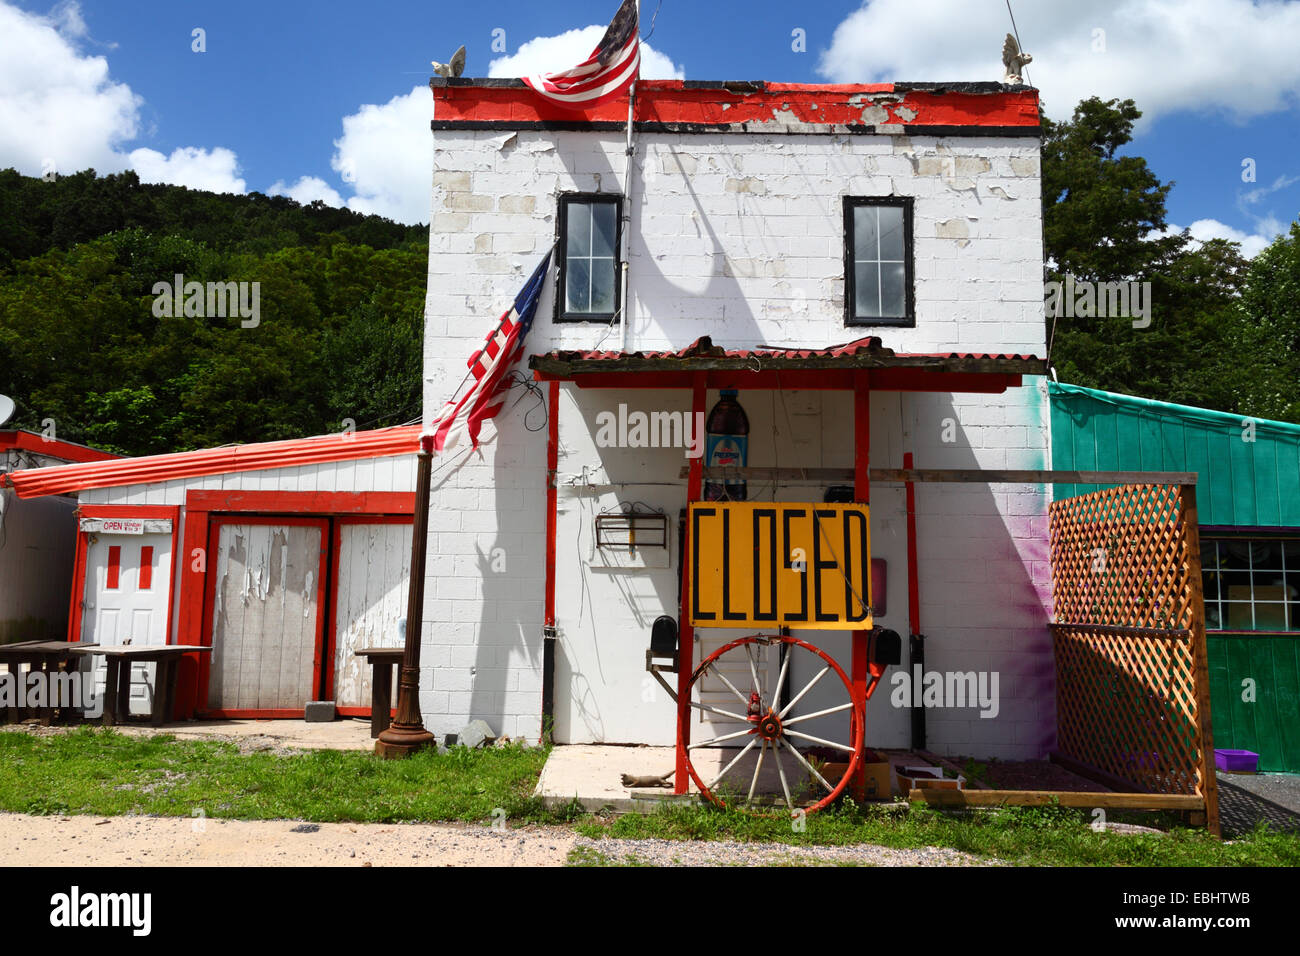 Geschlossene Zeichen und alte Wagen vor Haus Rad / store in der Nähe von Gettysburg, Pennsylvania, USA Stockfoto